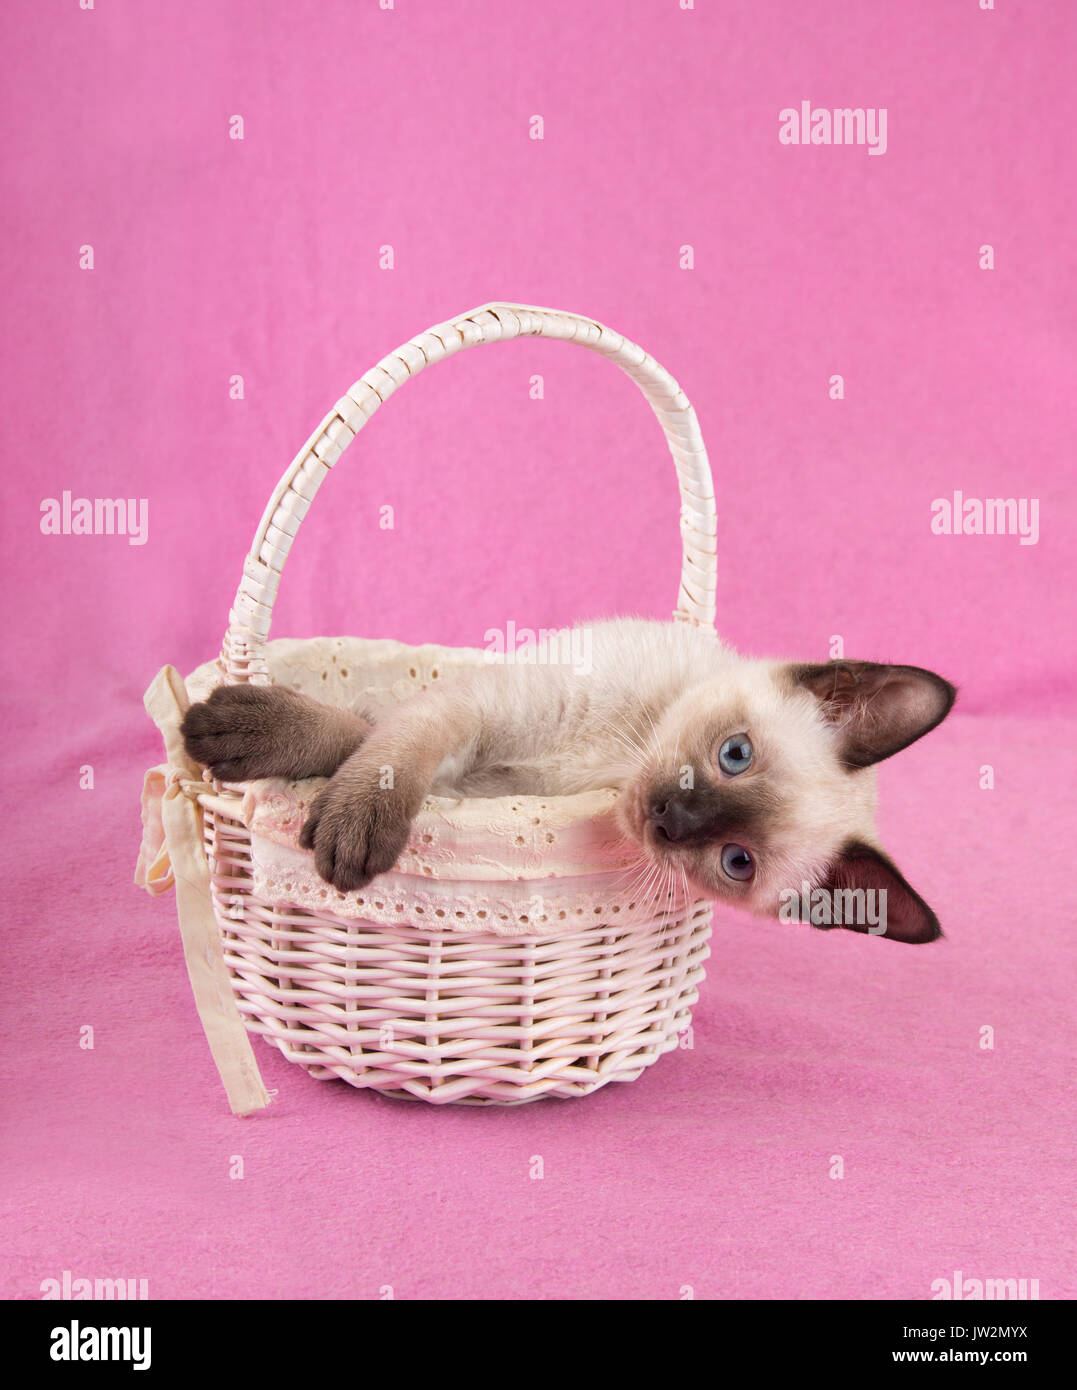 Adorables gatitos siameses en una canasta blanca, mirando hacia los lados en el visor, con un fondo de color rosa Foto de stock